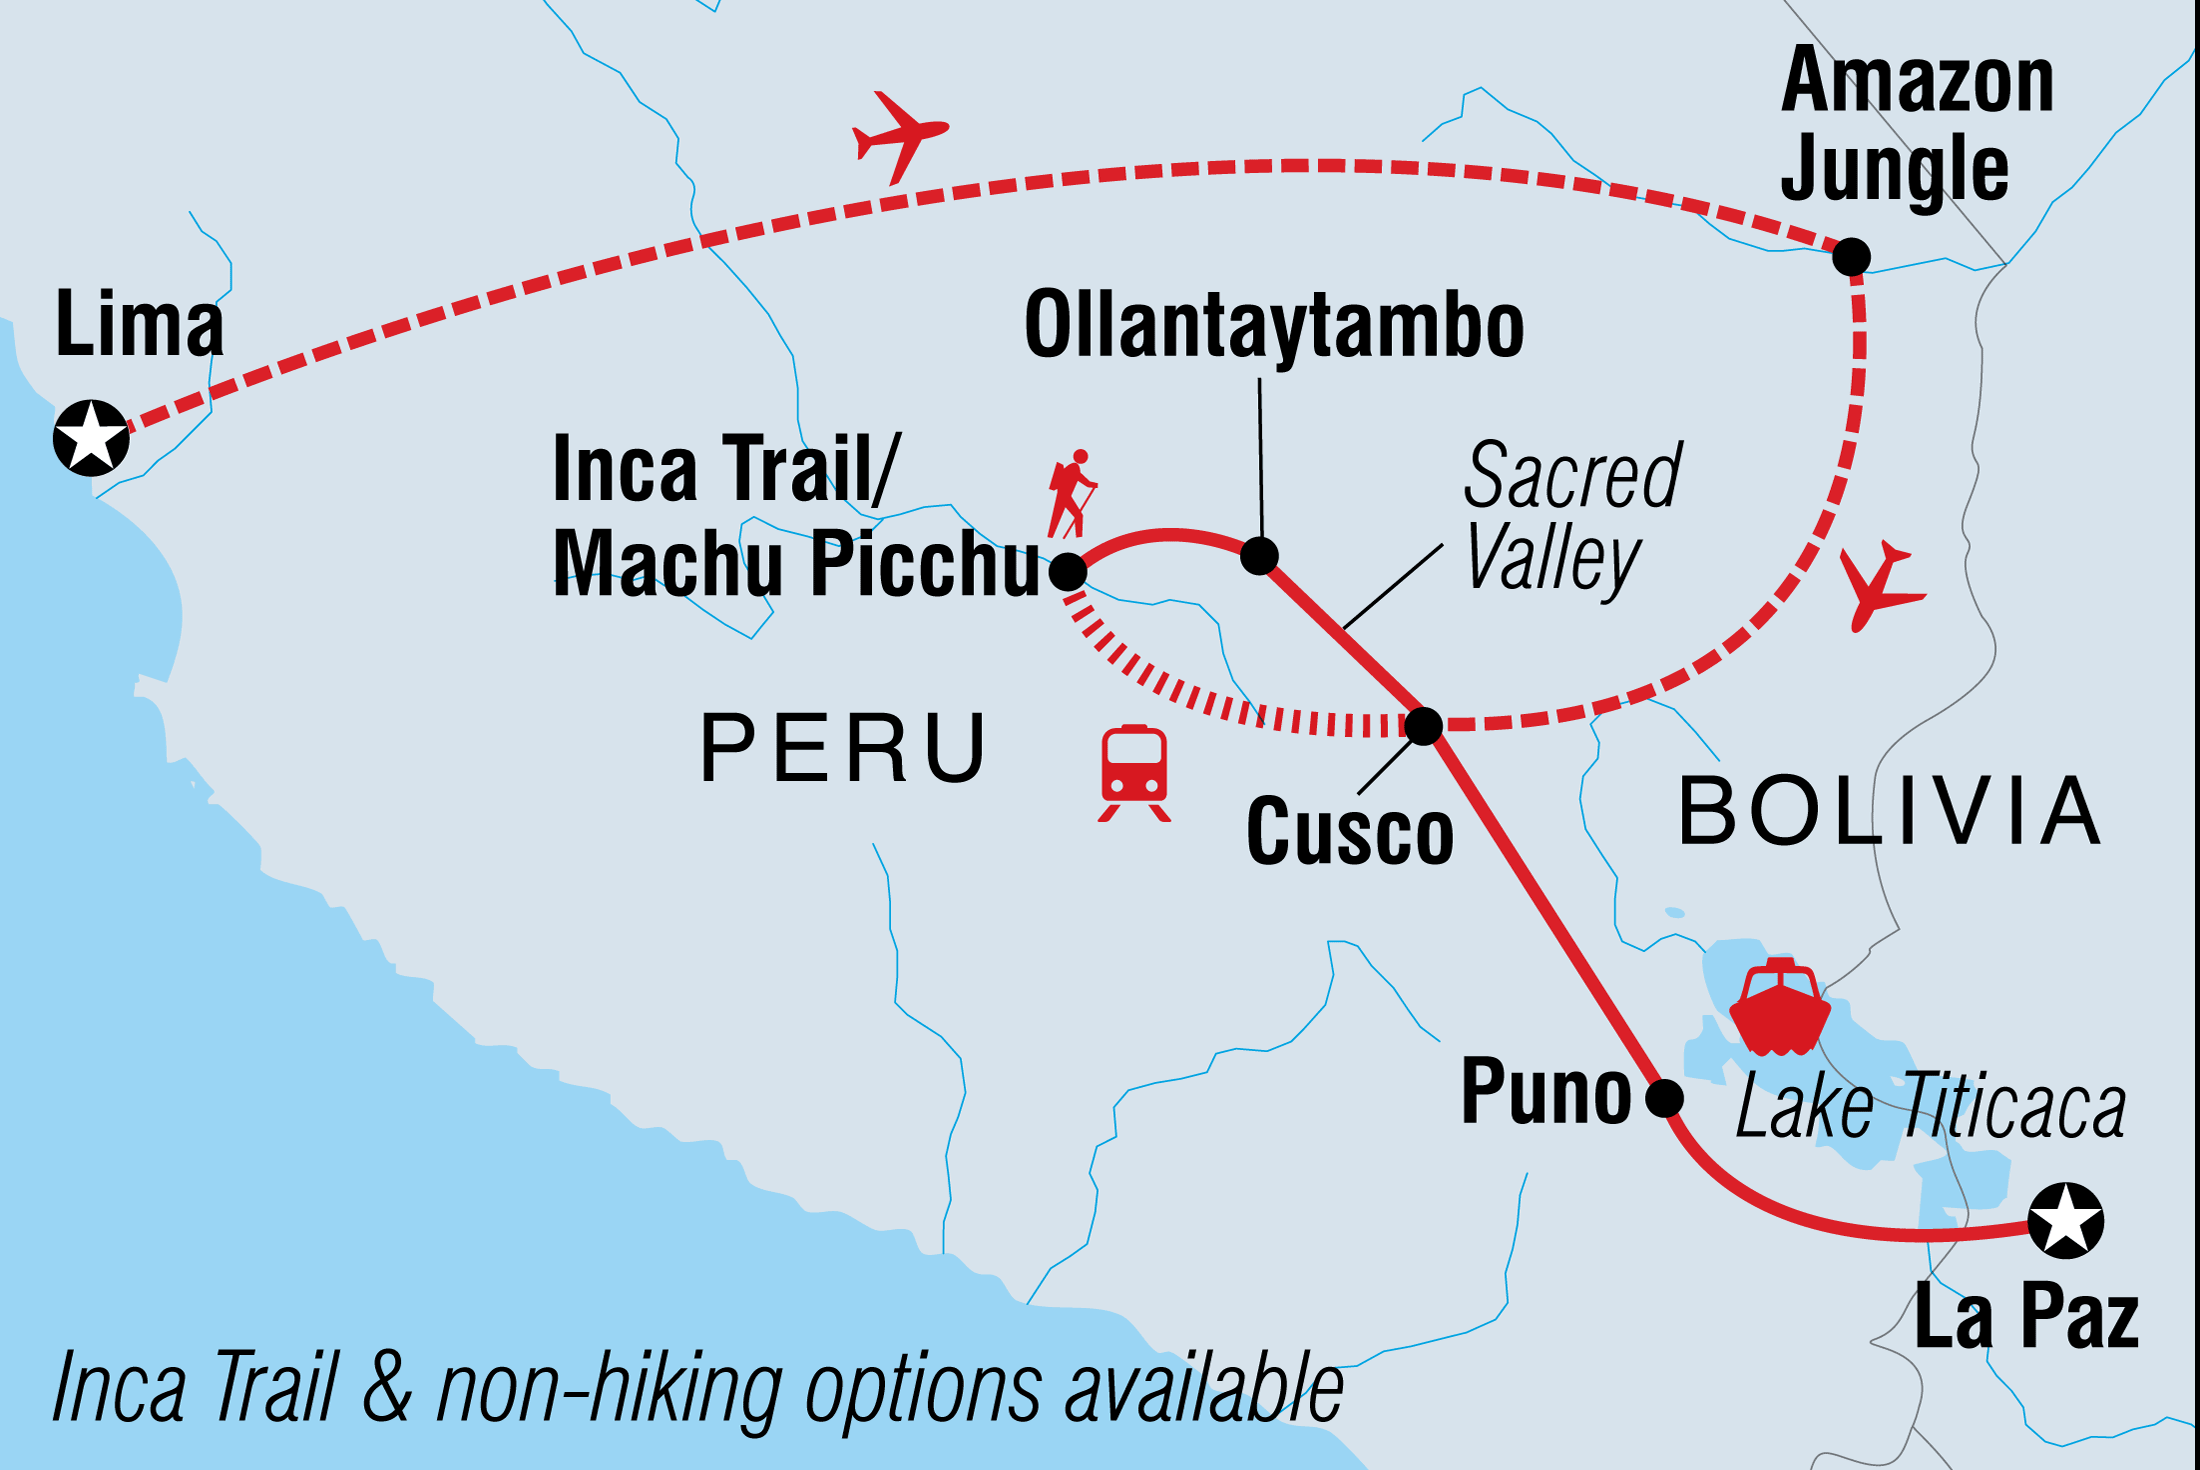 Map of Real Peru To Bolivia including Bolivia and Peru